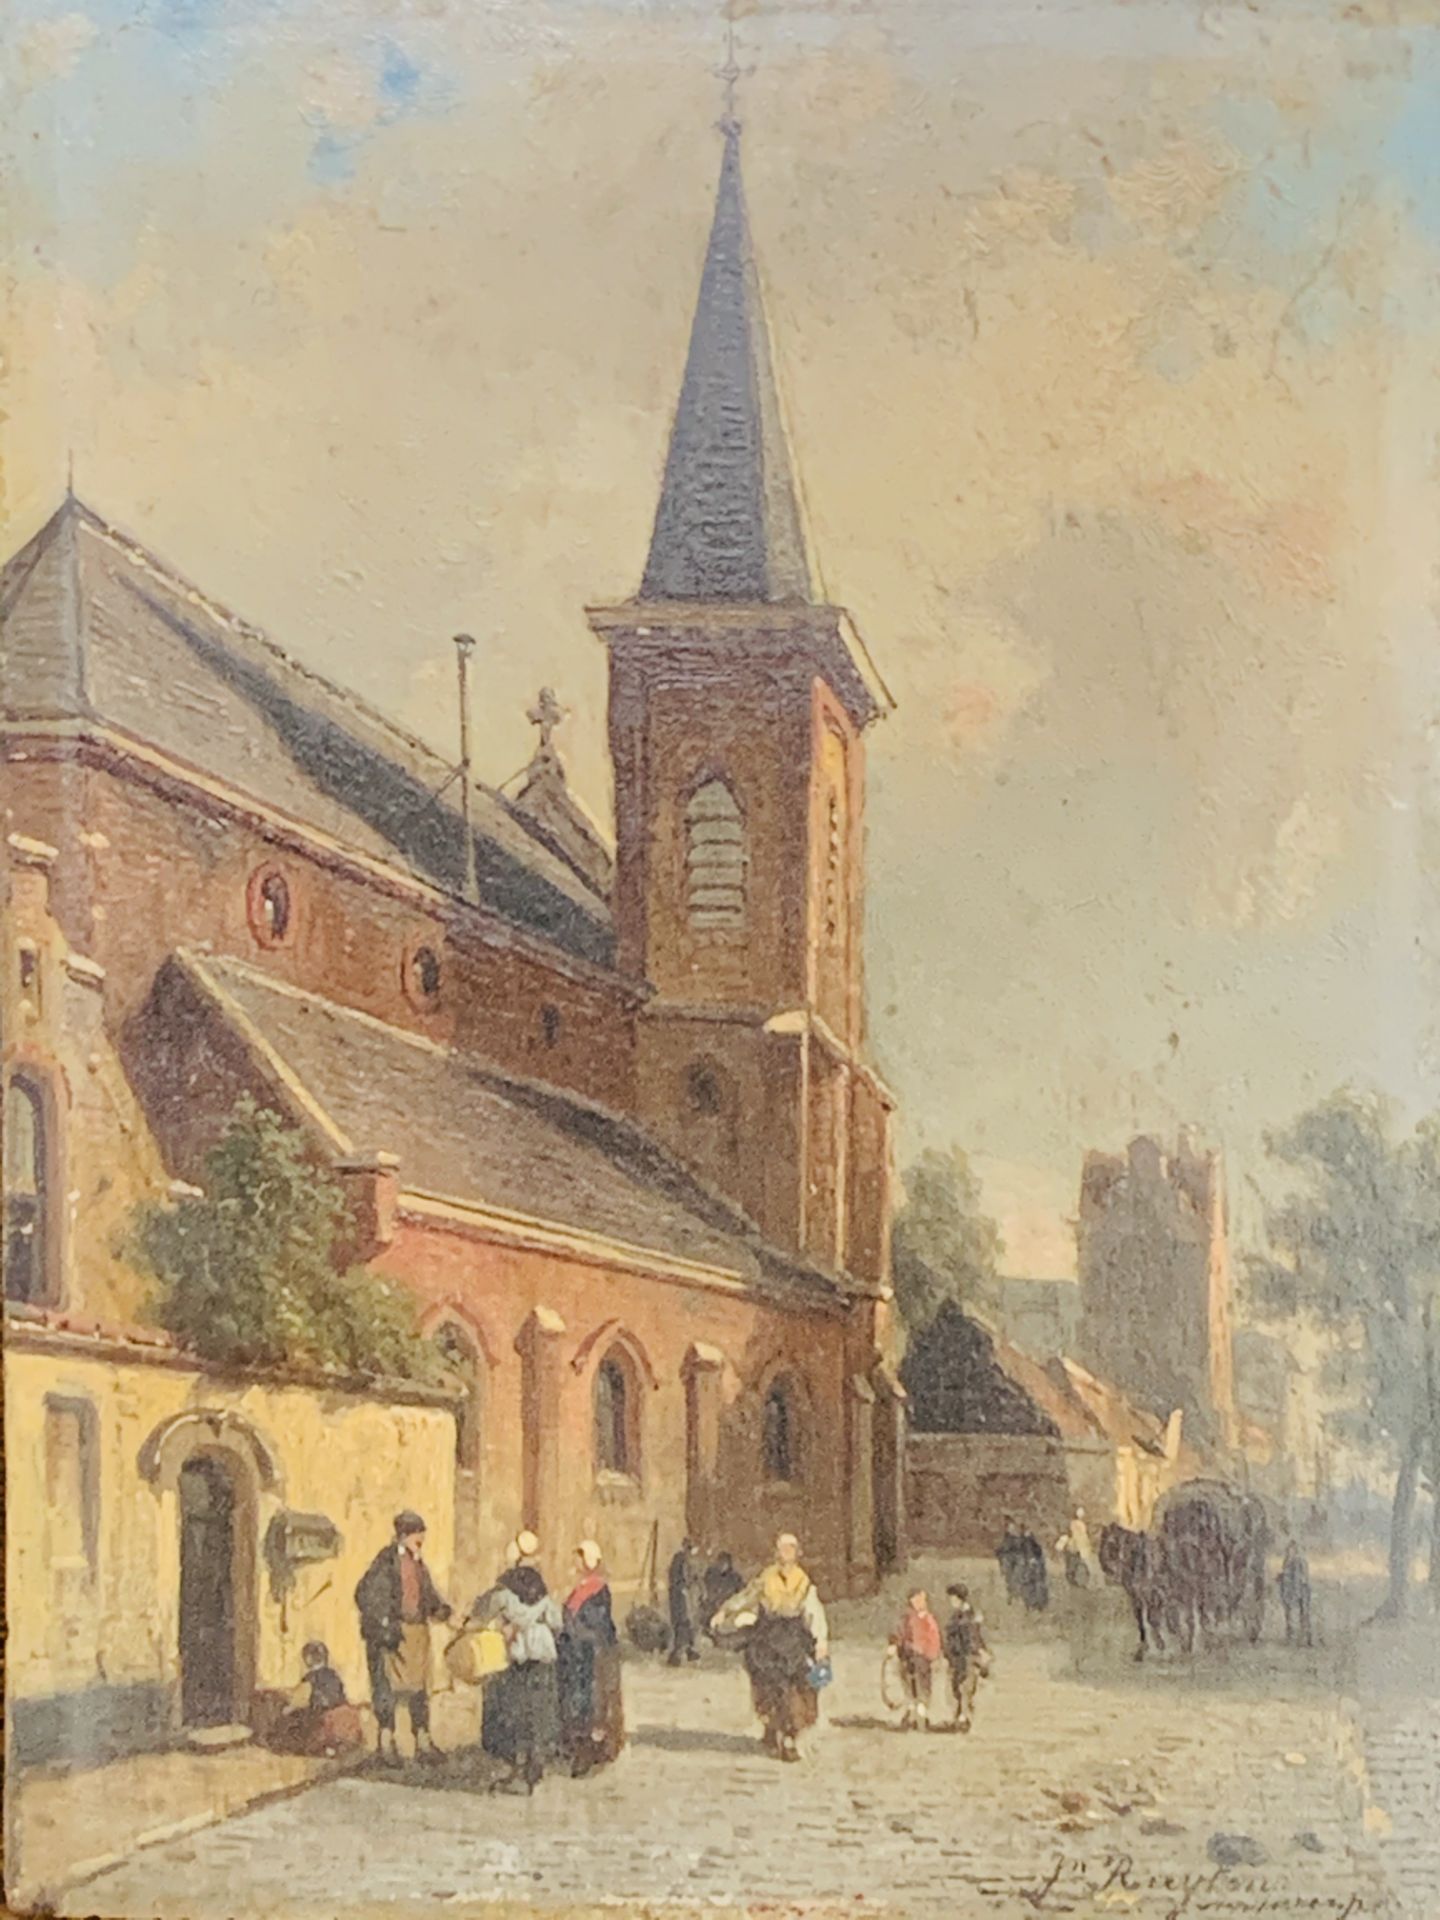 Oak framed oil on board Antwerp street scene signed Jan Ruyten (1813-81)